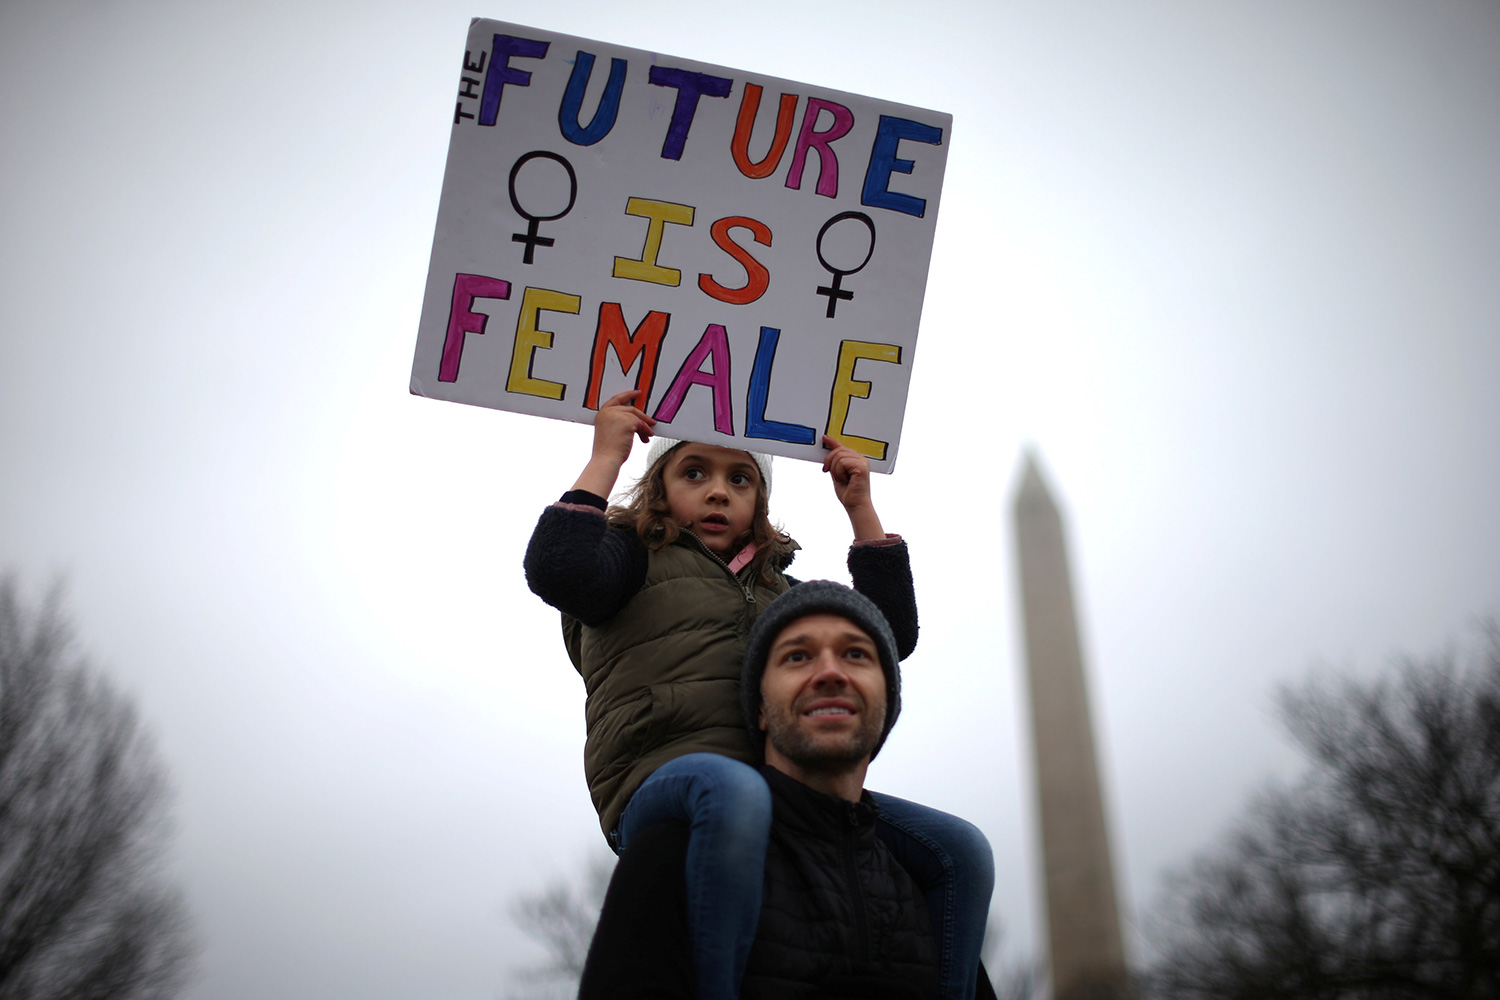 Una niña, a hombros de su padre, sostiene un cartel que reza “el futuro es femenino”. (Foto: Lucy Nicholson / Reuters)